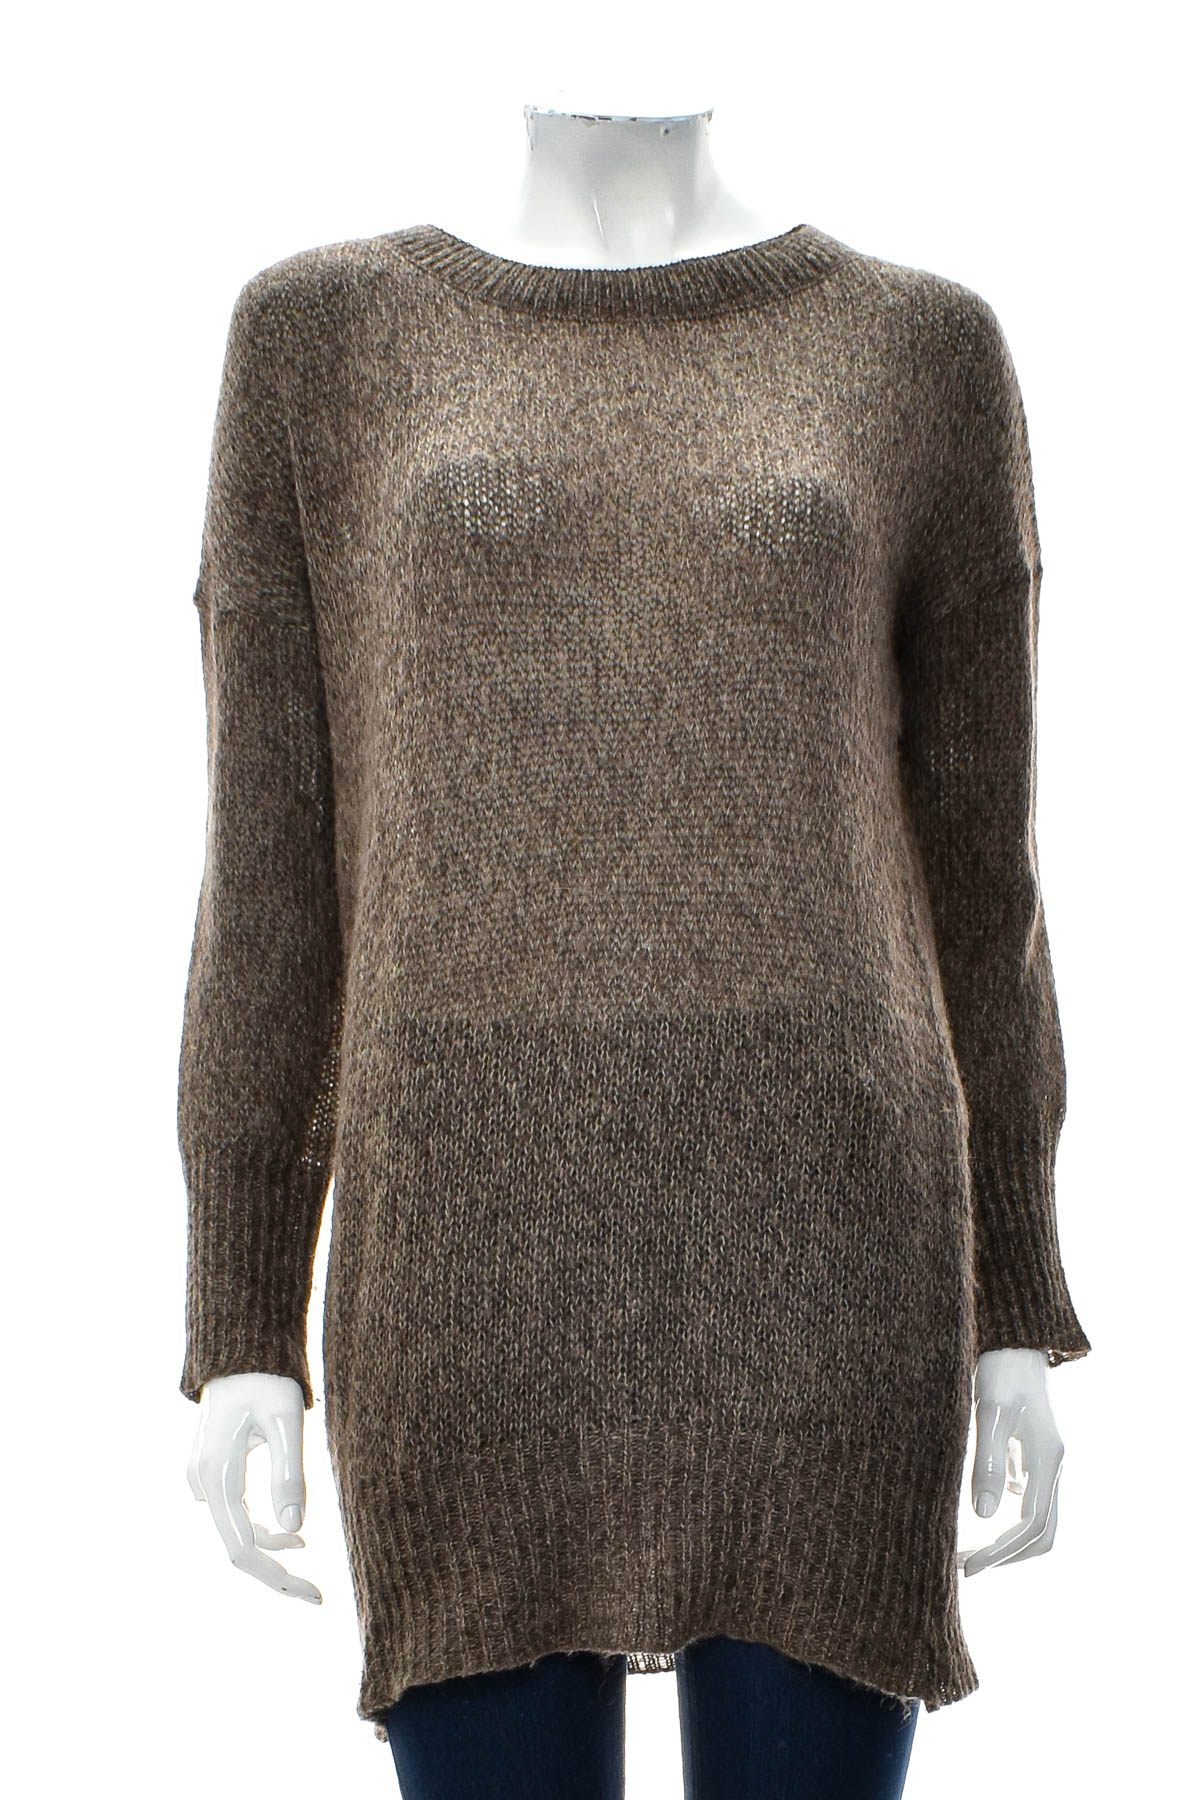 Women's sweater - Uno Piu - 0